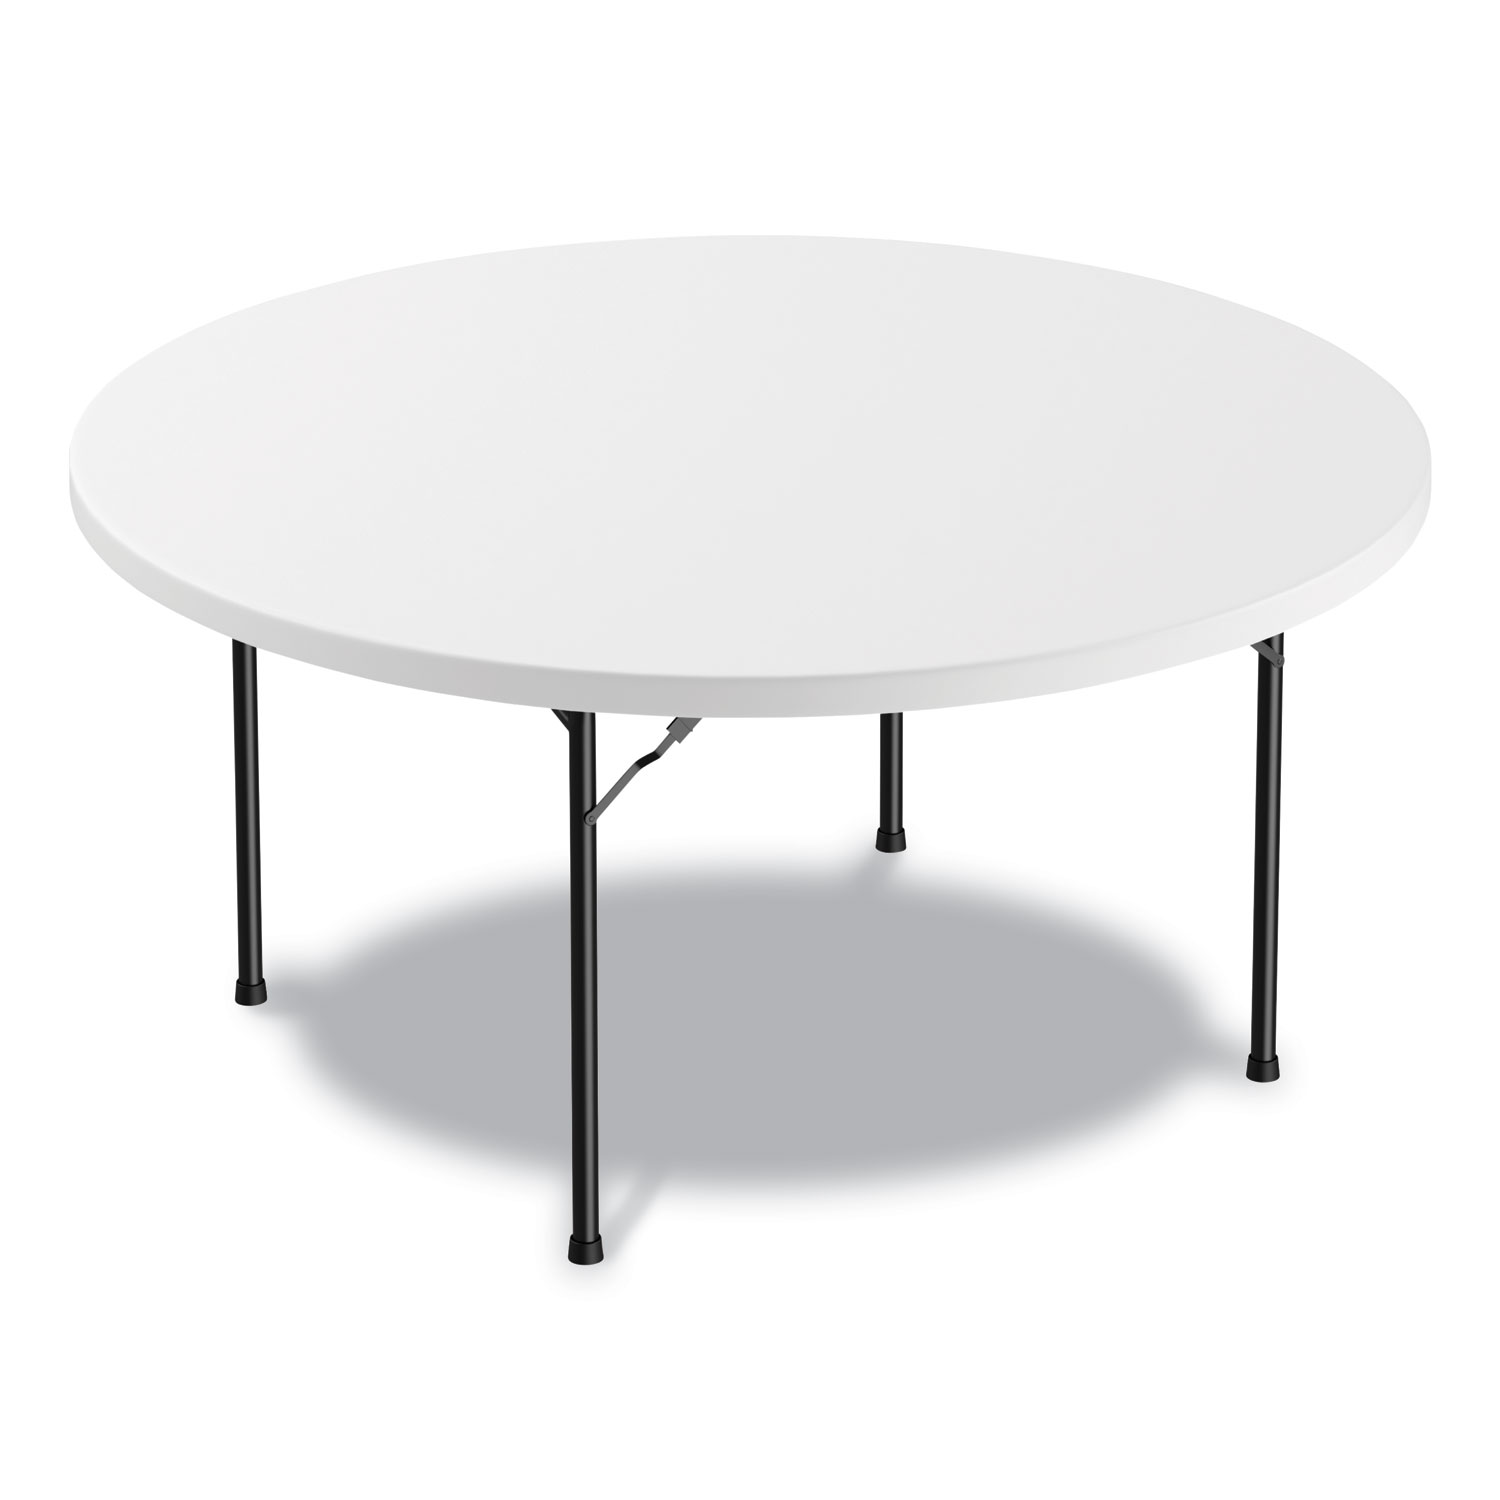 Heavy Duty Folding Leg Work Tables, Folding Work Tables, Continuous Length  Work Table, Steel Folding Table, Metal Folding Table